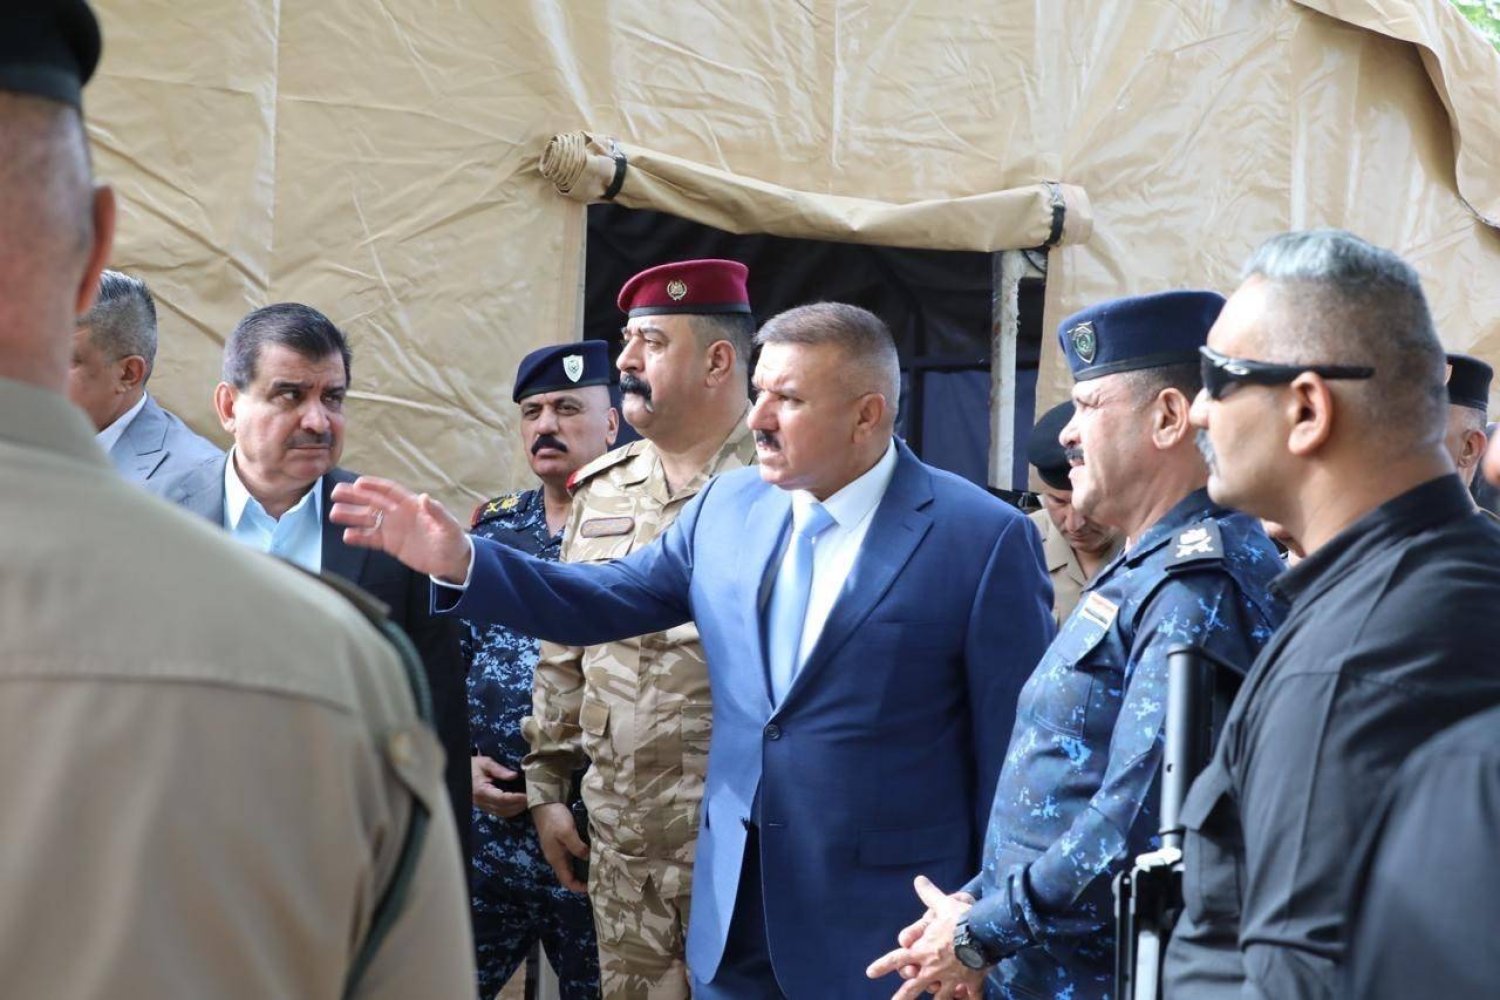 وزير الداخلية العراقي مع مجموعة ضباط أمام مقر العملية الأمنية في البتاويين (إعلام حكومي)